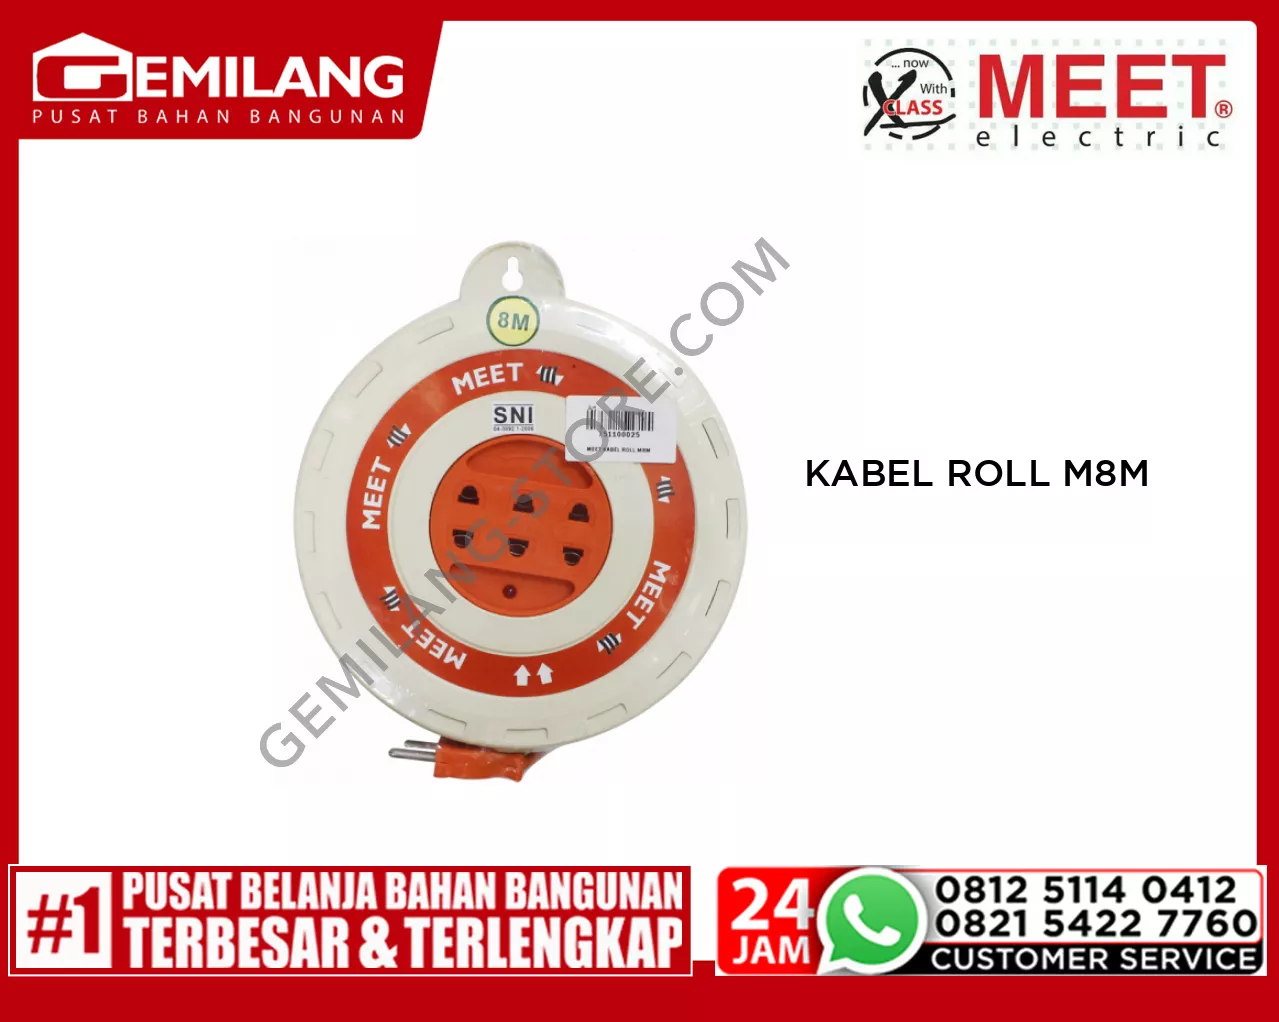 MEET KABEL ROLL M8M